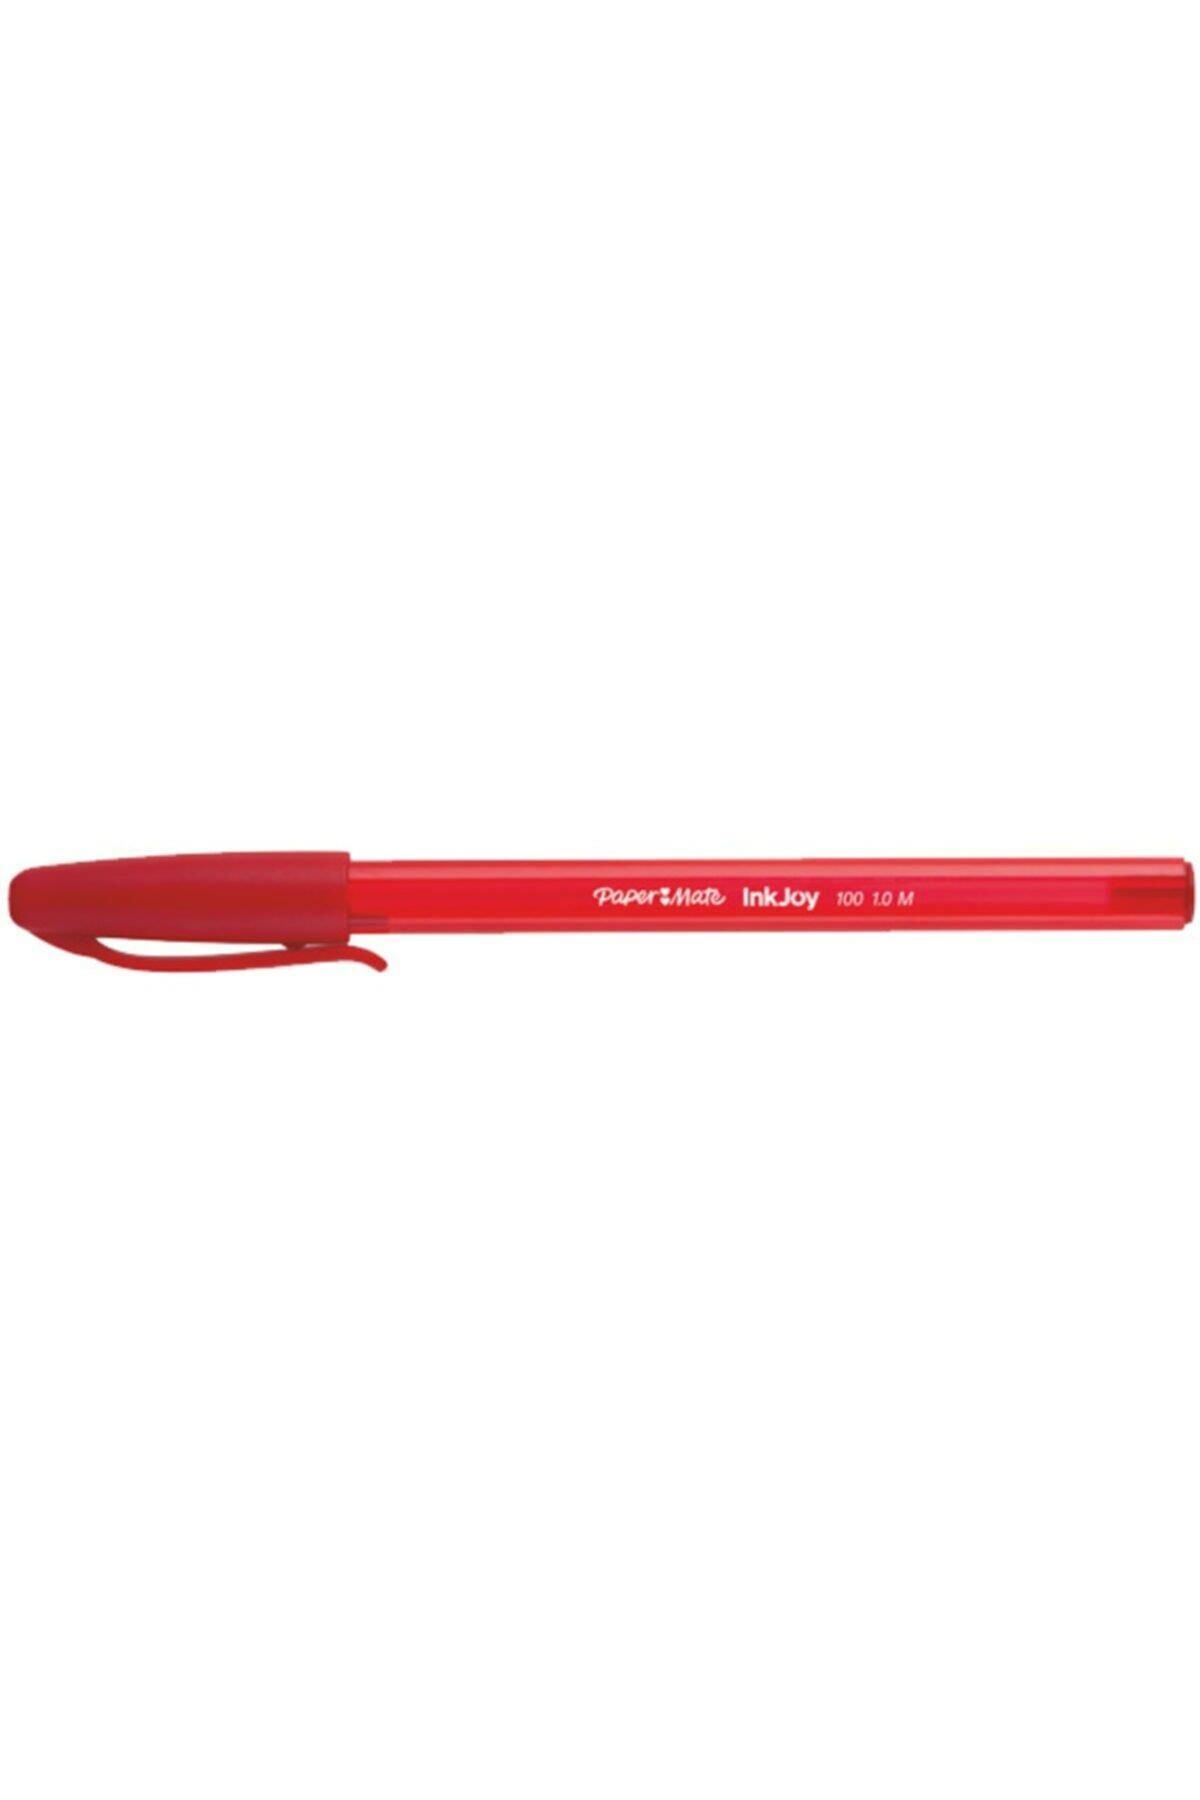 Paper Mate Paper Mate Kırmızı Kapaklı Tükenmez Kalem İnkjoy 100 1.0 MM Kırmızı (50 Li Paket)